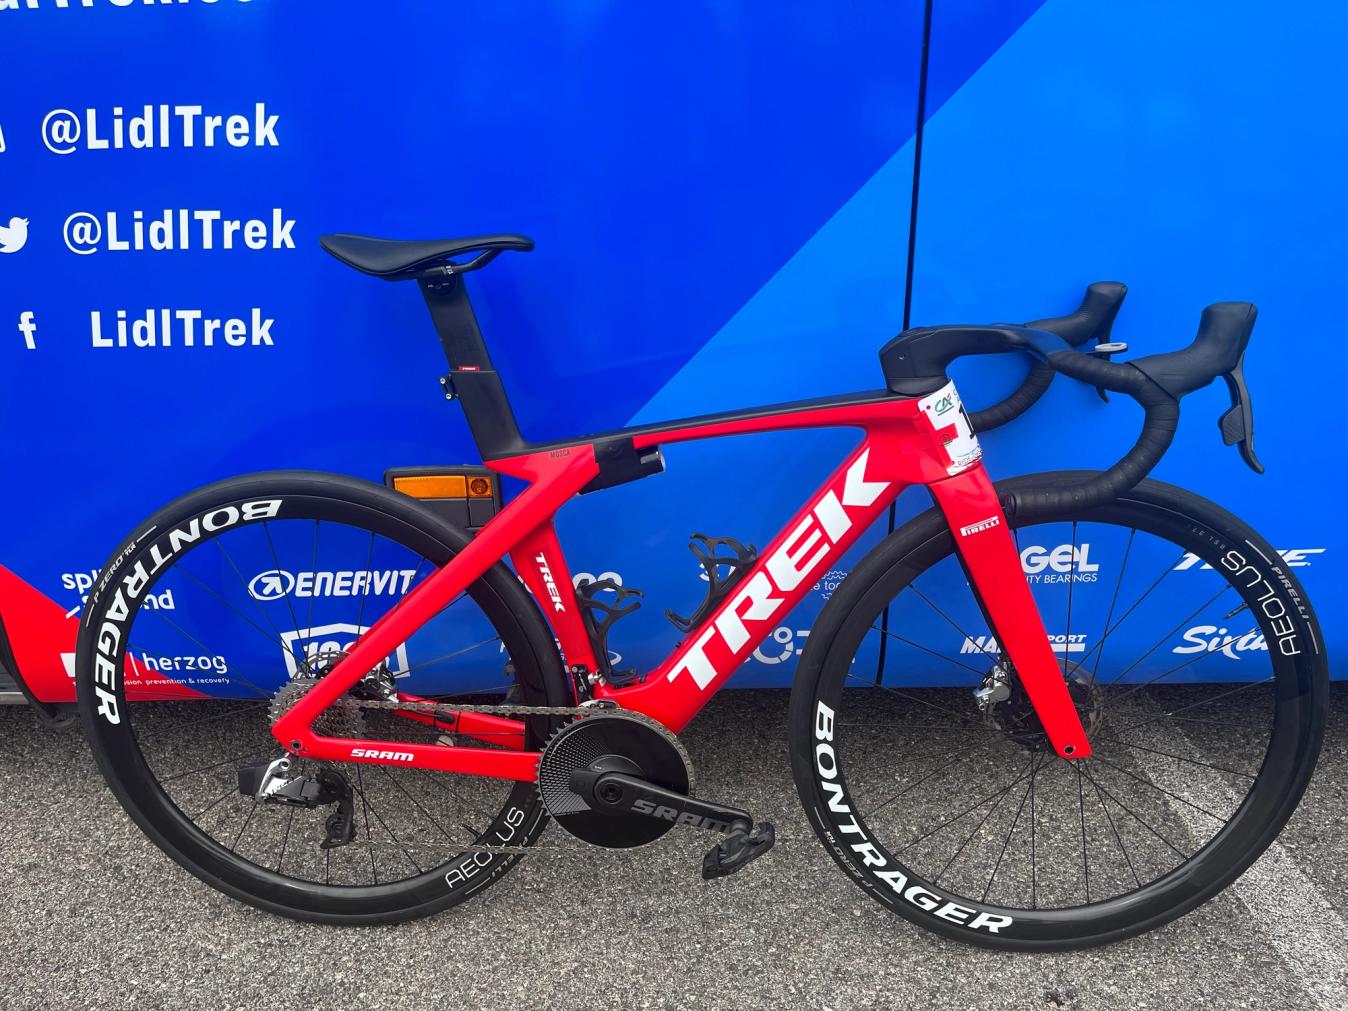 Lidl-Trek kept their road bike set-up for Serenissima Gravel